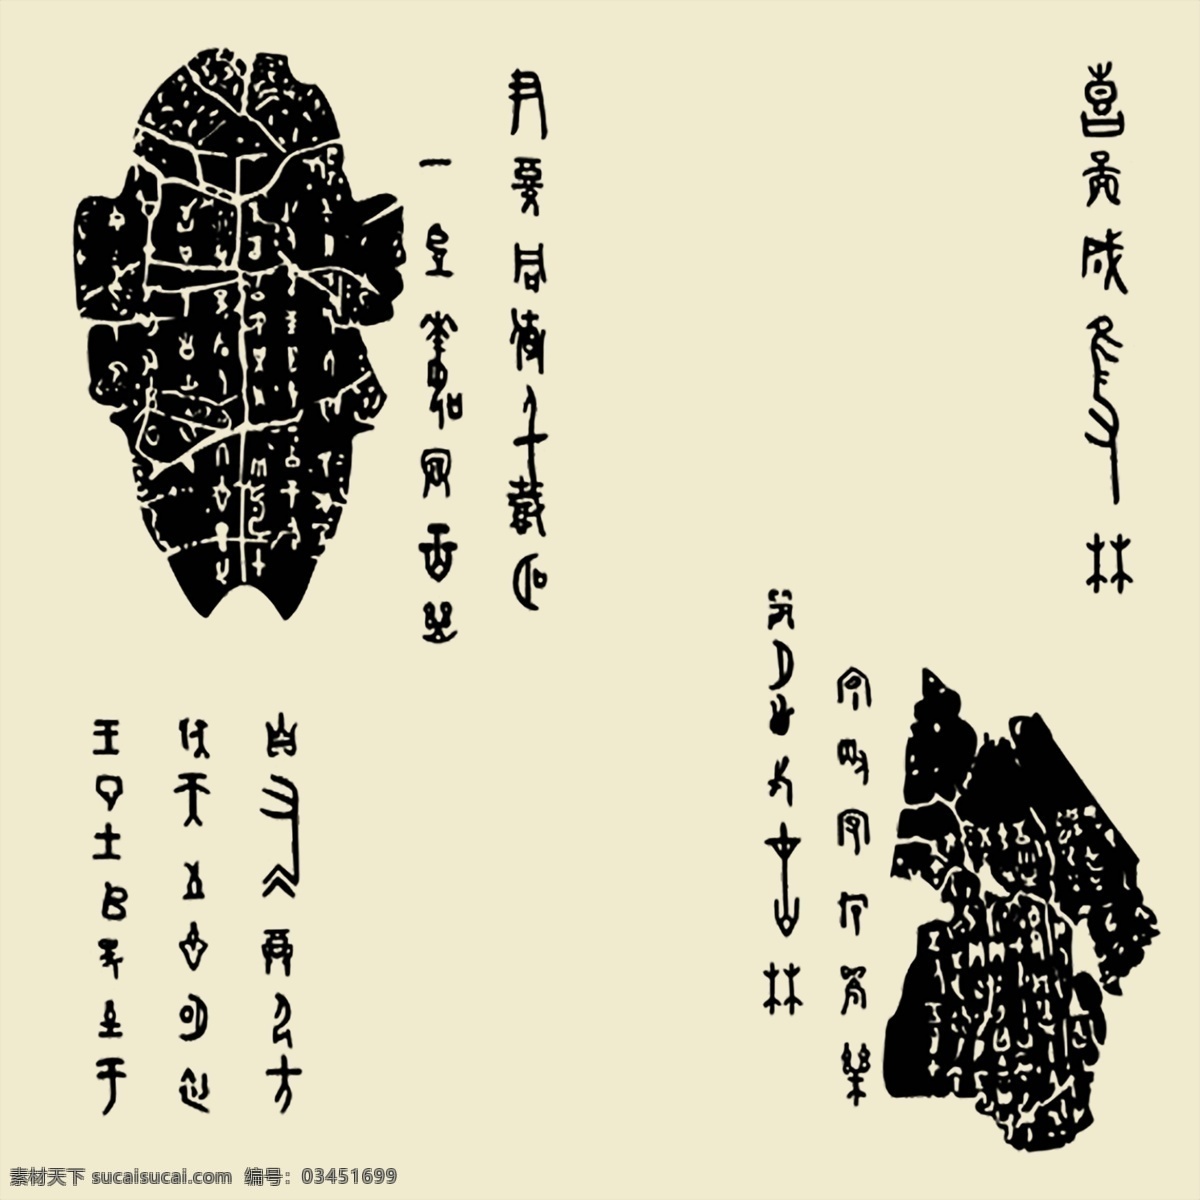 甲骨文 古文 原始文字 象形文字 古文字 考古 龟甲 文字起源 龙骨 传统素材 文化艺术 绘画书法